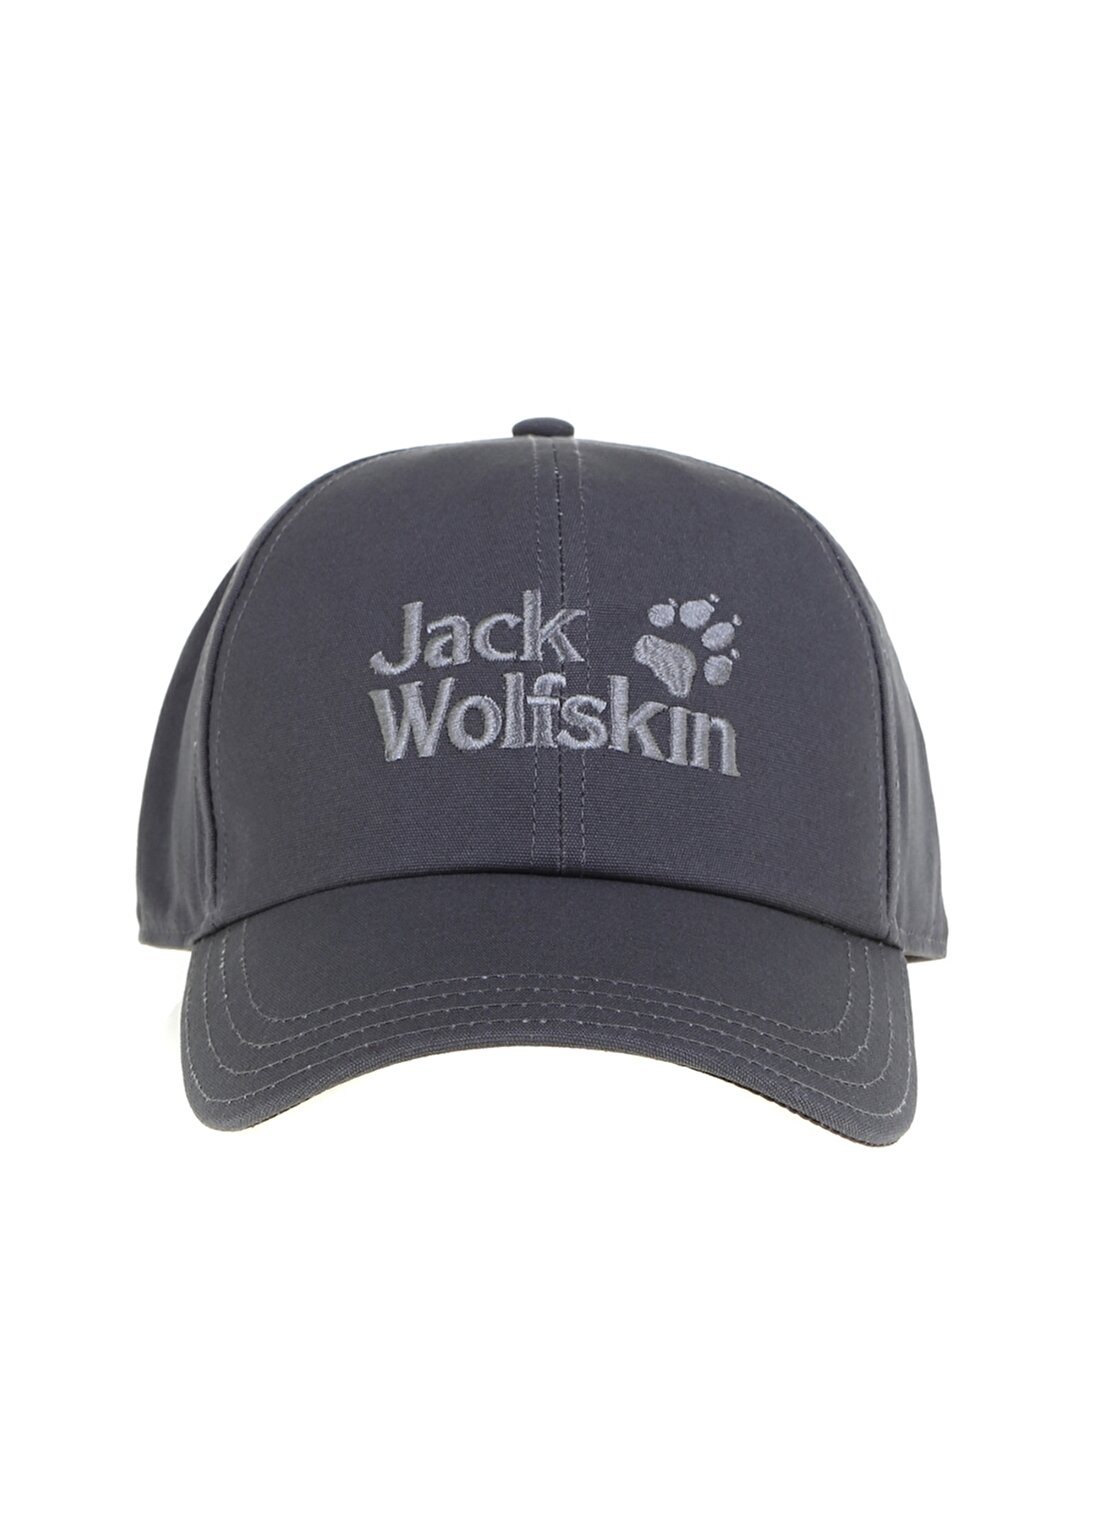 Jack Wolfskin Koyu Gri Unisex Şapka BASEBALL CAP